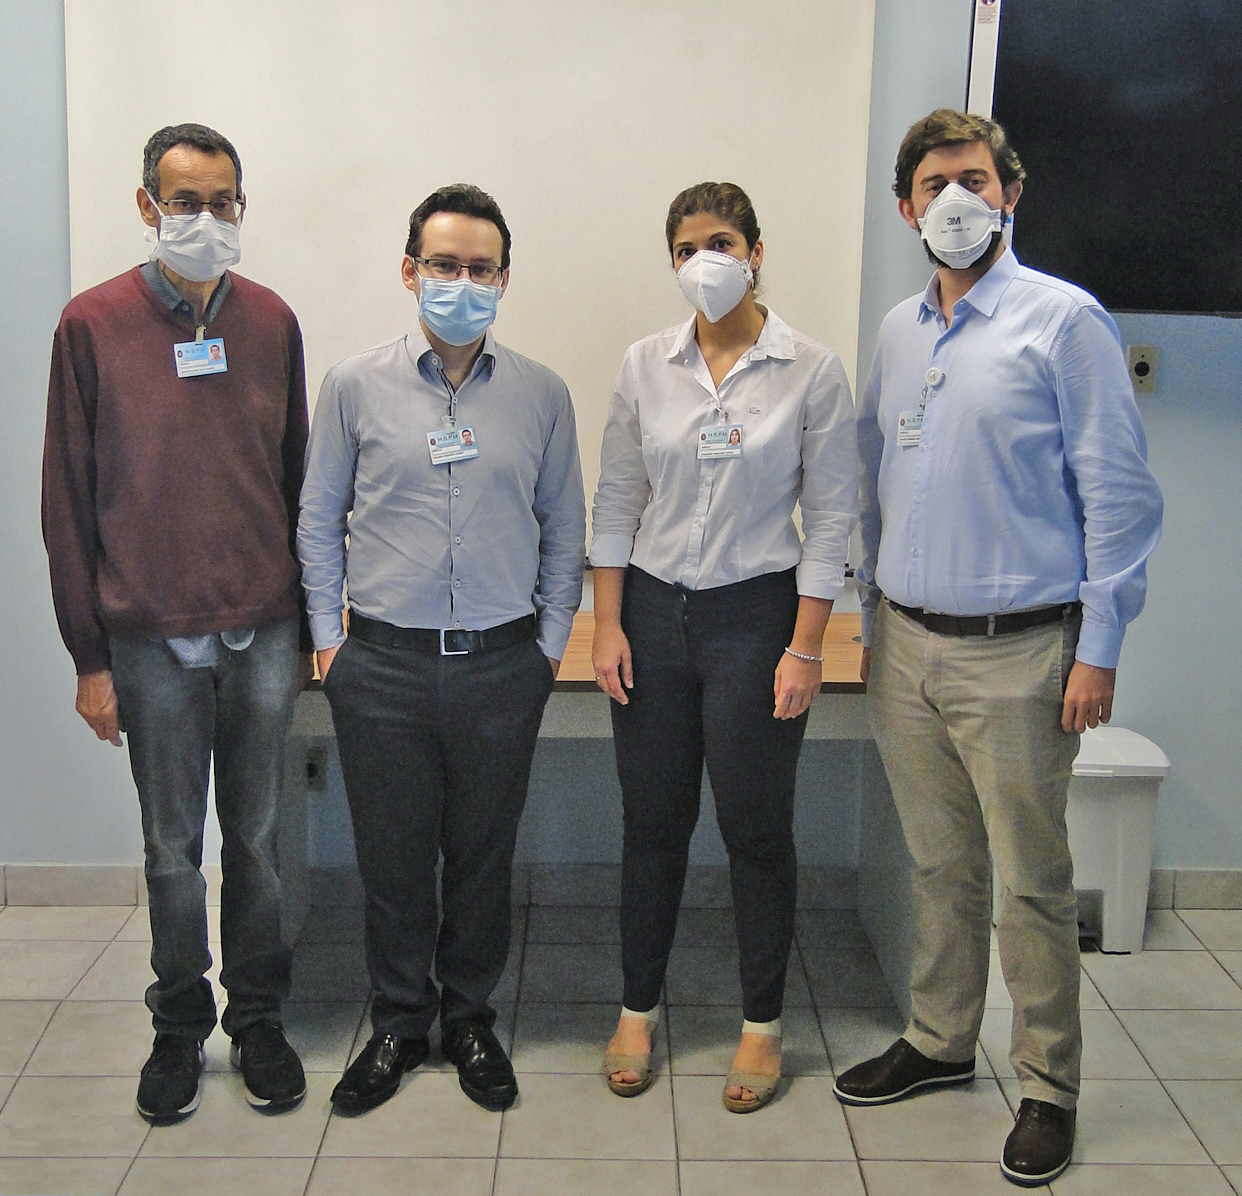 Foto com quatro integrantes da equipe de neurocirurgia do HSPM, dois homens, uma mulher e outro homem no canto direito